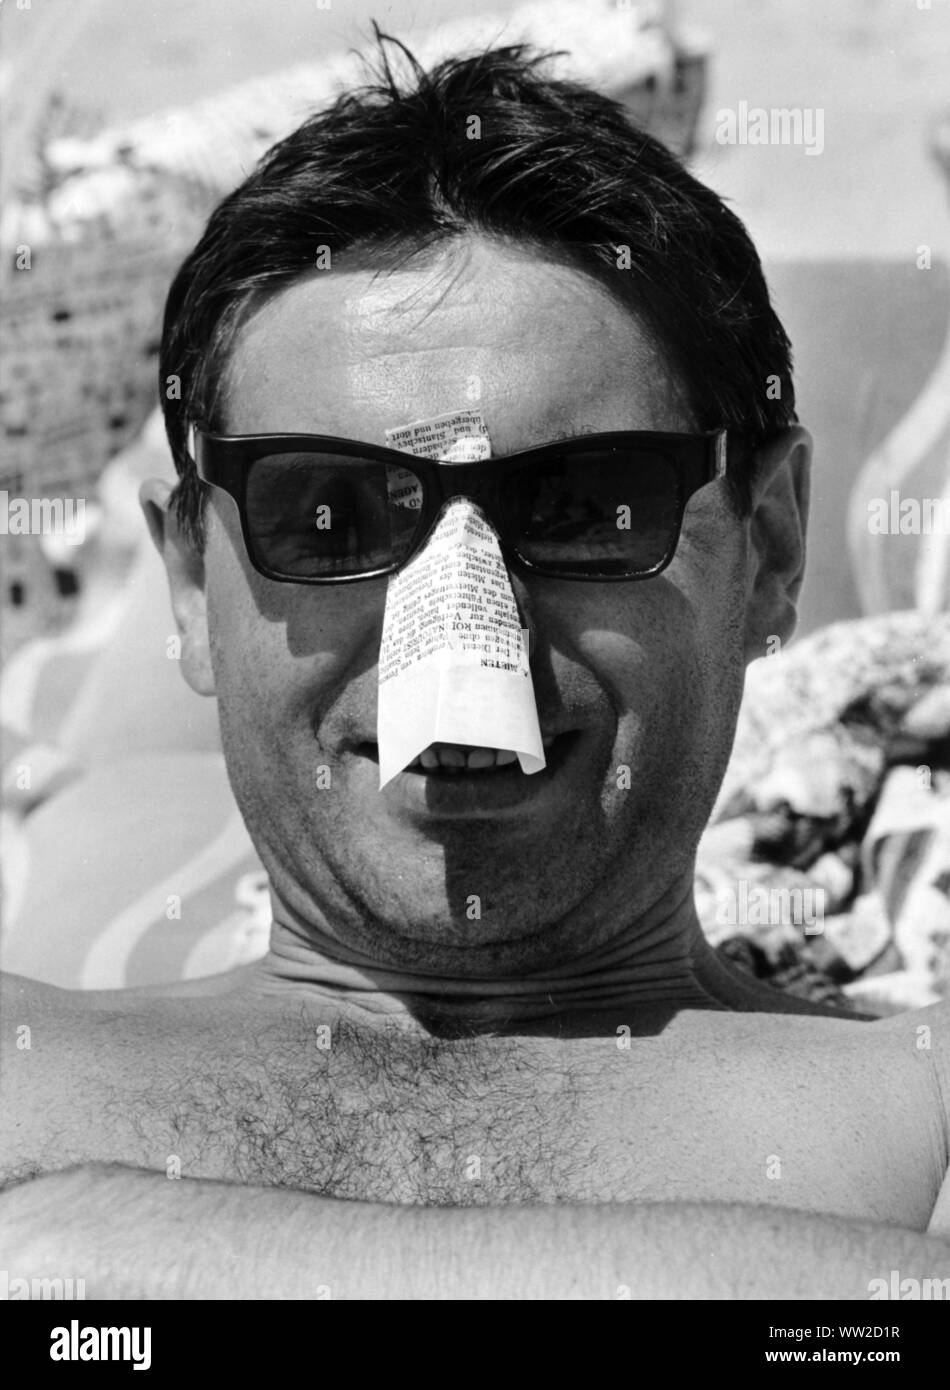 Questo vacanzieri sul Mar Nero in Bulgaria nel luglio 1966 protegge in modo creativo il suo naso da scottature solari: egli ha bloccato un pezzo di carta piegato sotto i suoi occhiali da sole. | Utilizzo di tutto il mondo Foto Stock